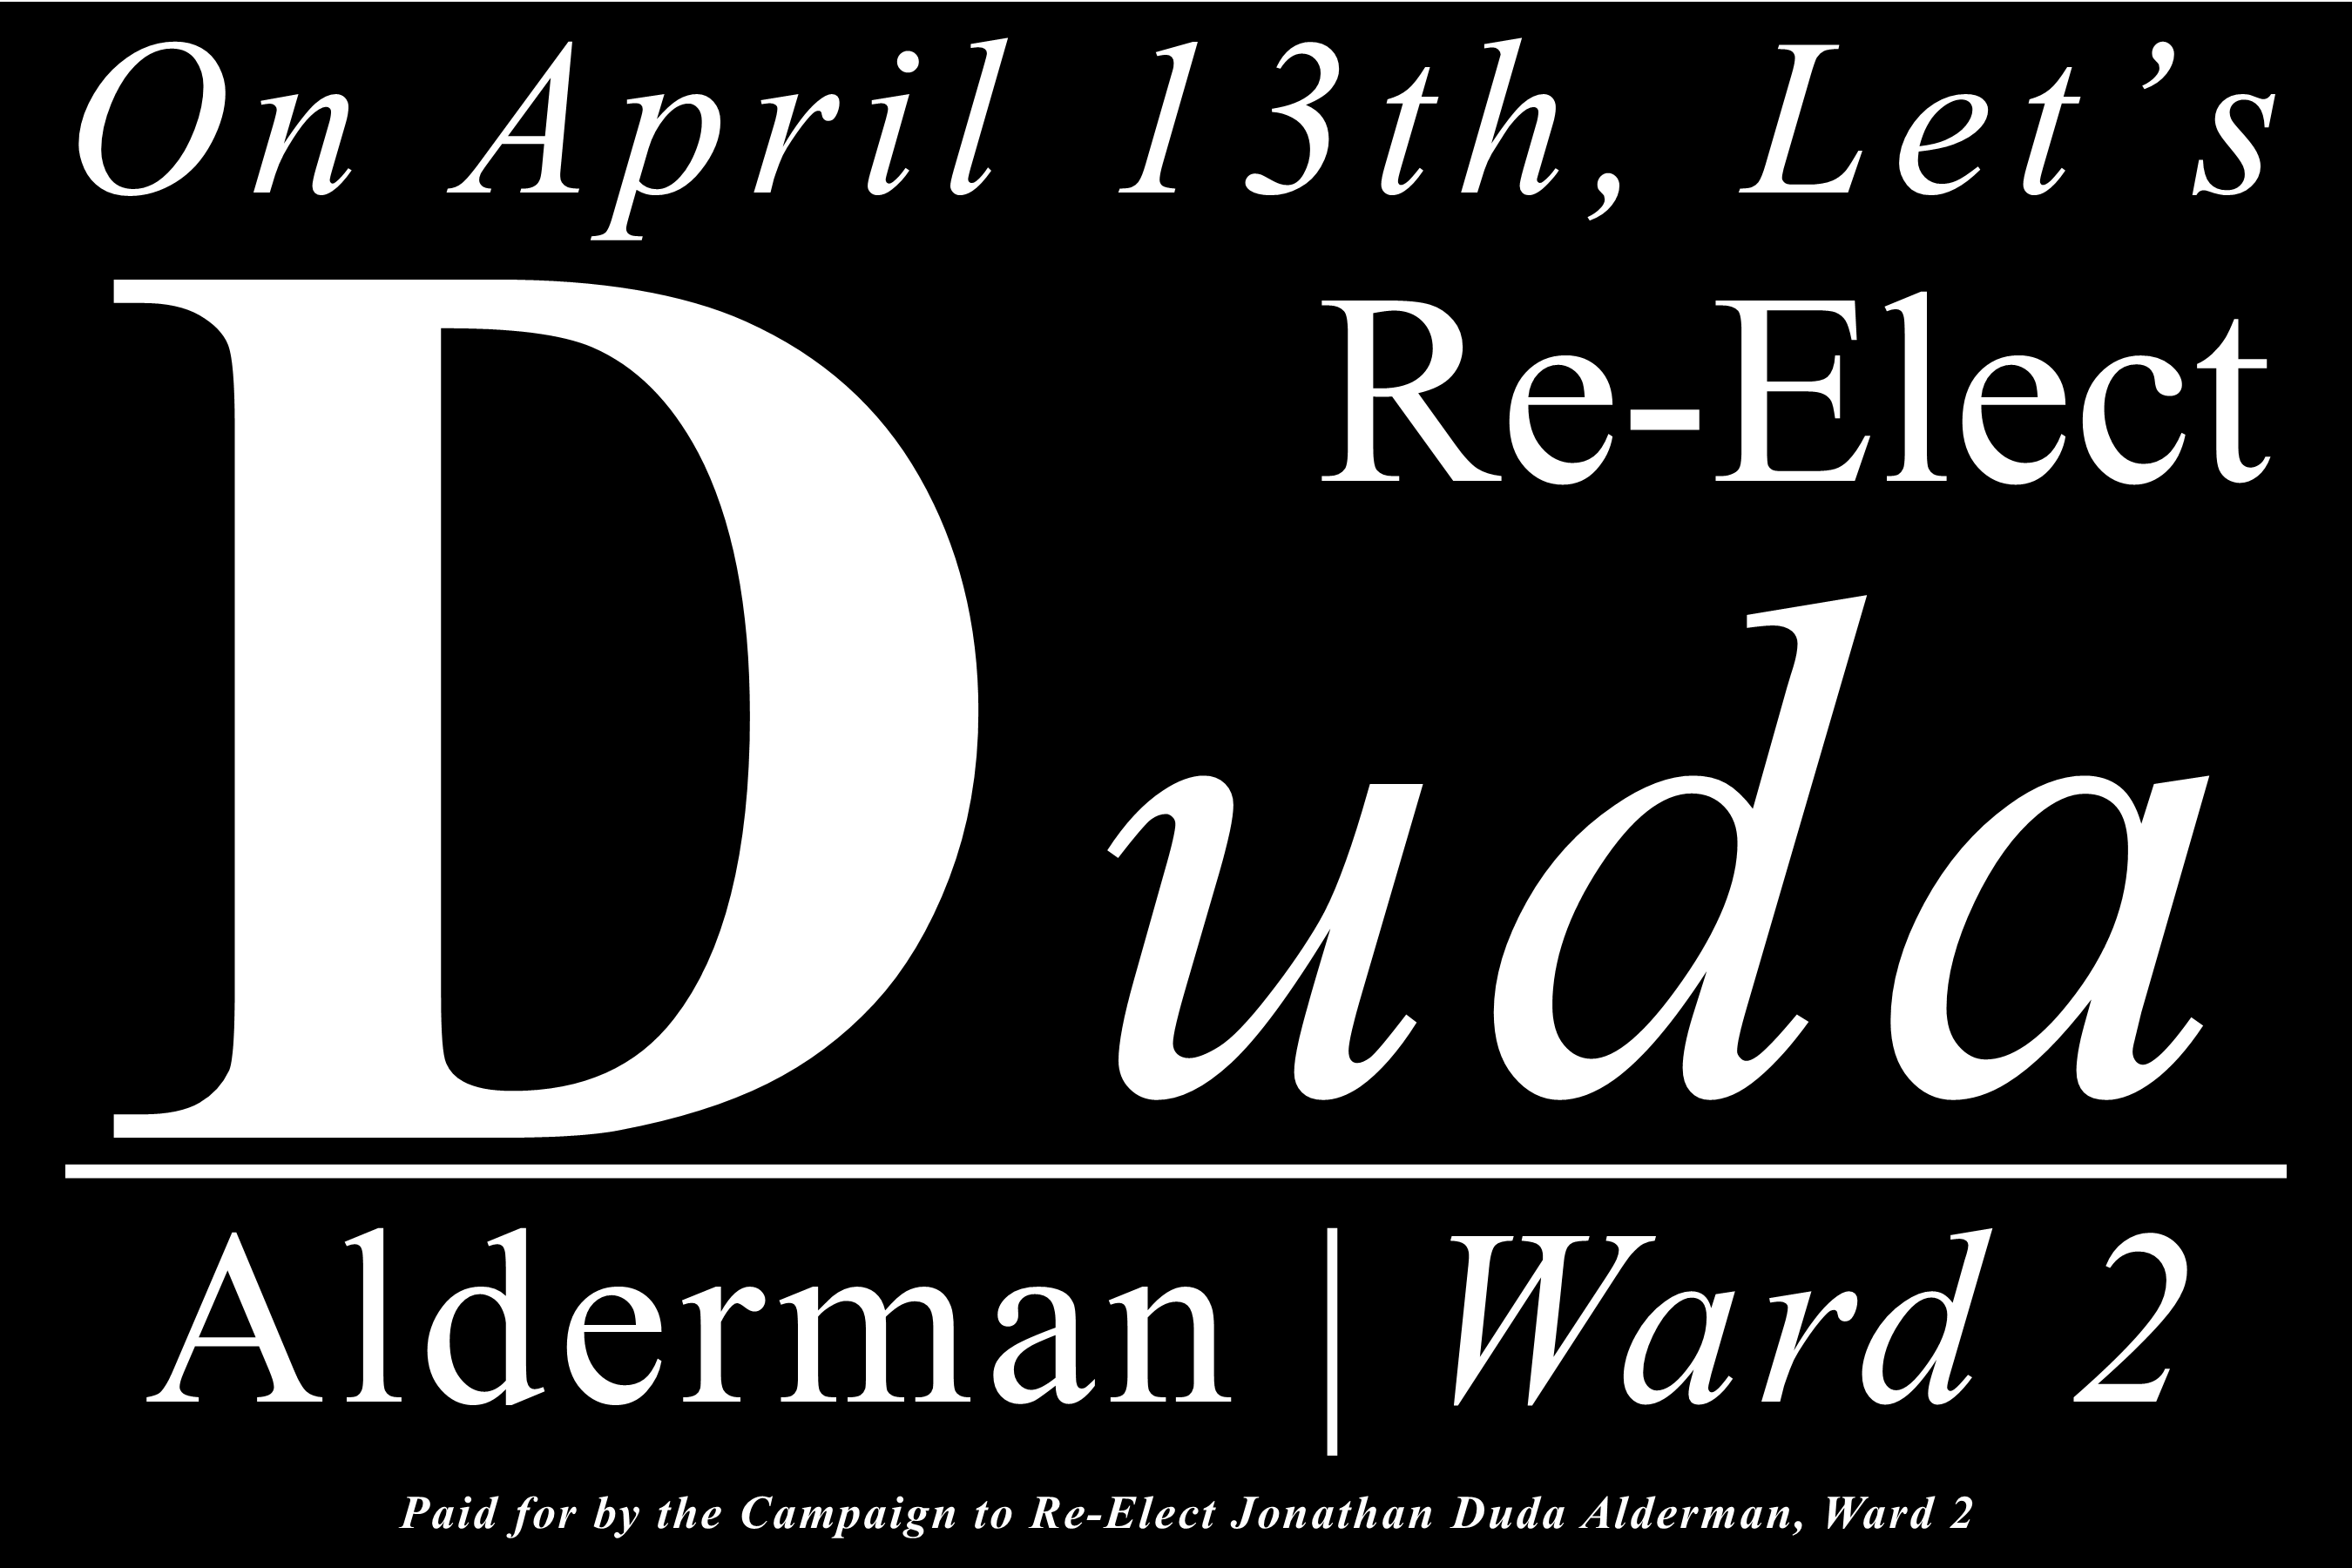 The Campaign to Re-Elect Jonathan Duda Alderman, Ward 2